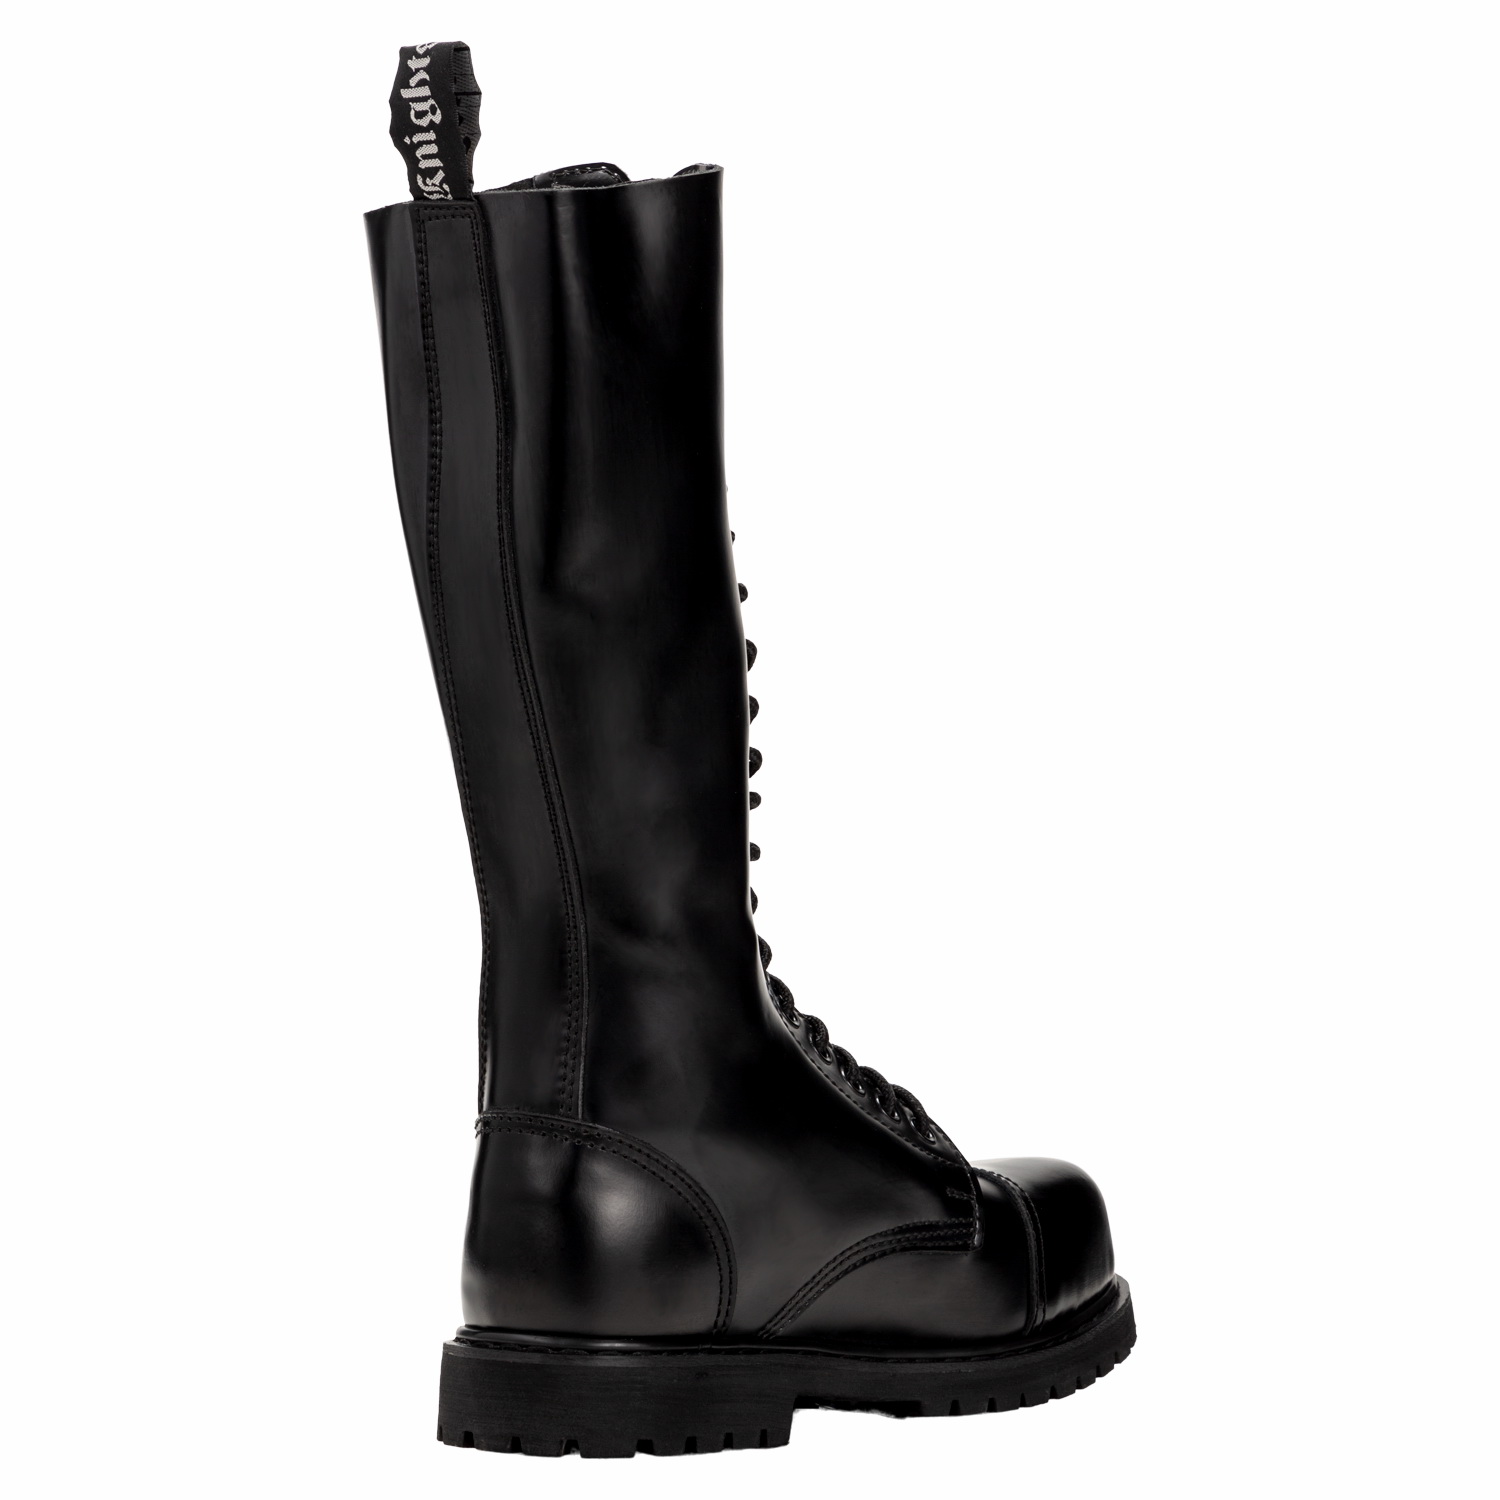 Ranger Boots Knightsbridge-Gothic Style  14-Loch mit Stahlkappe schwarz neu 